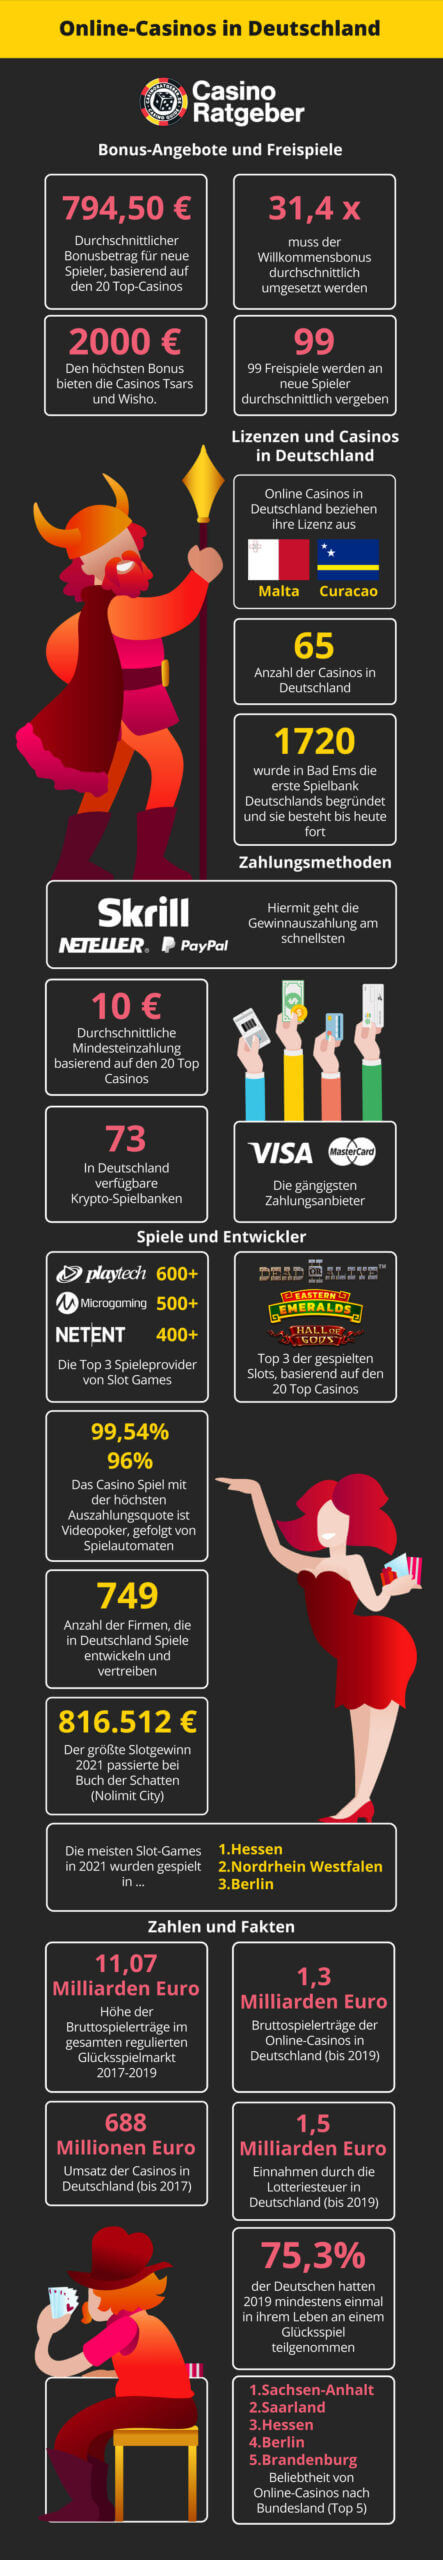 Infografik Online Casinos Deutschland 2021